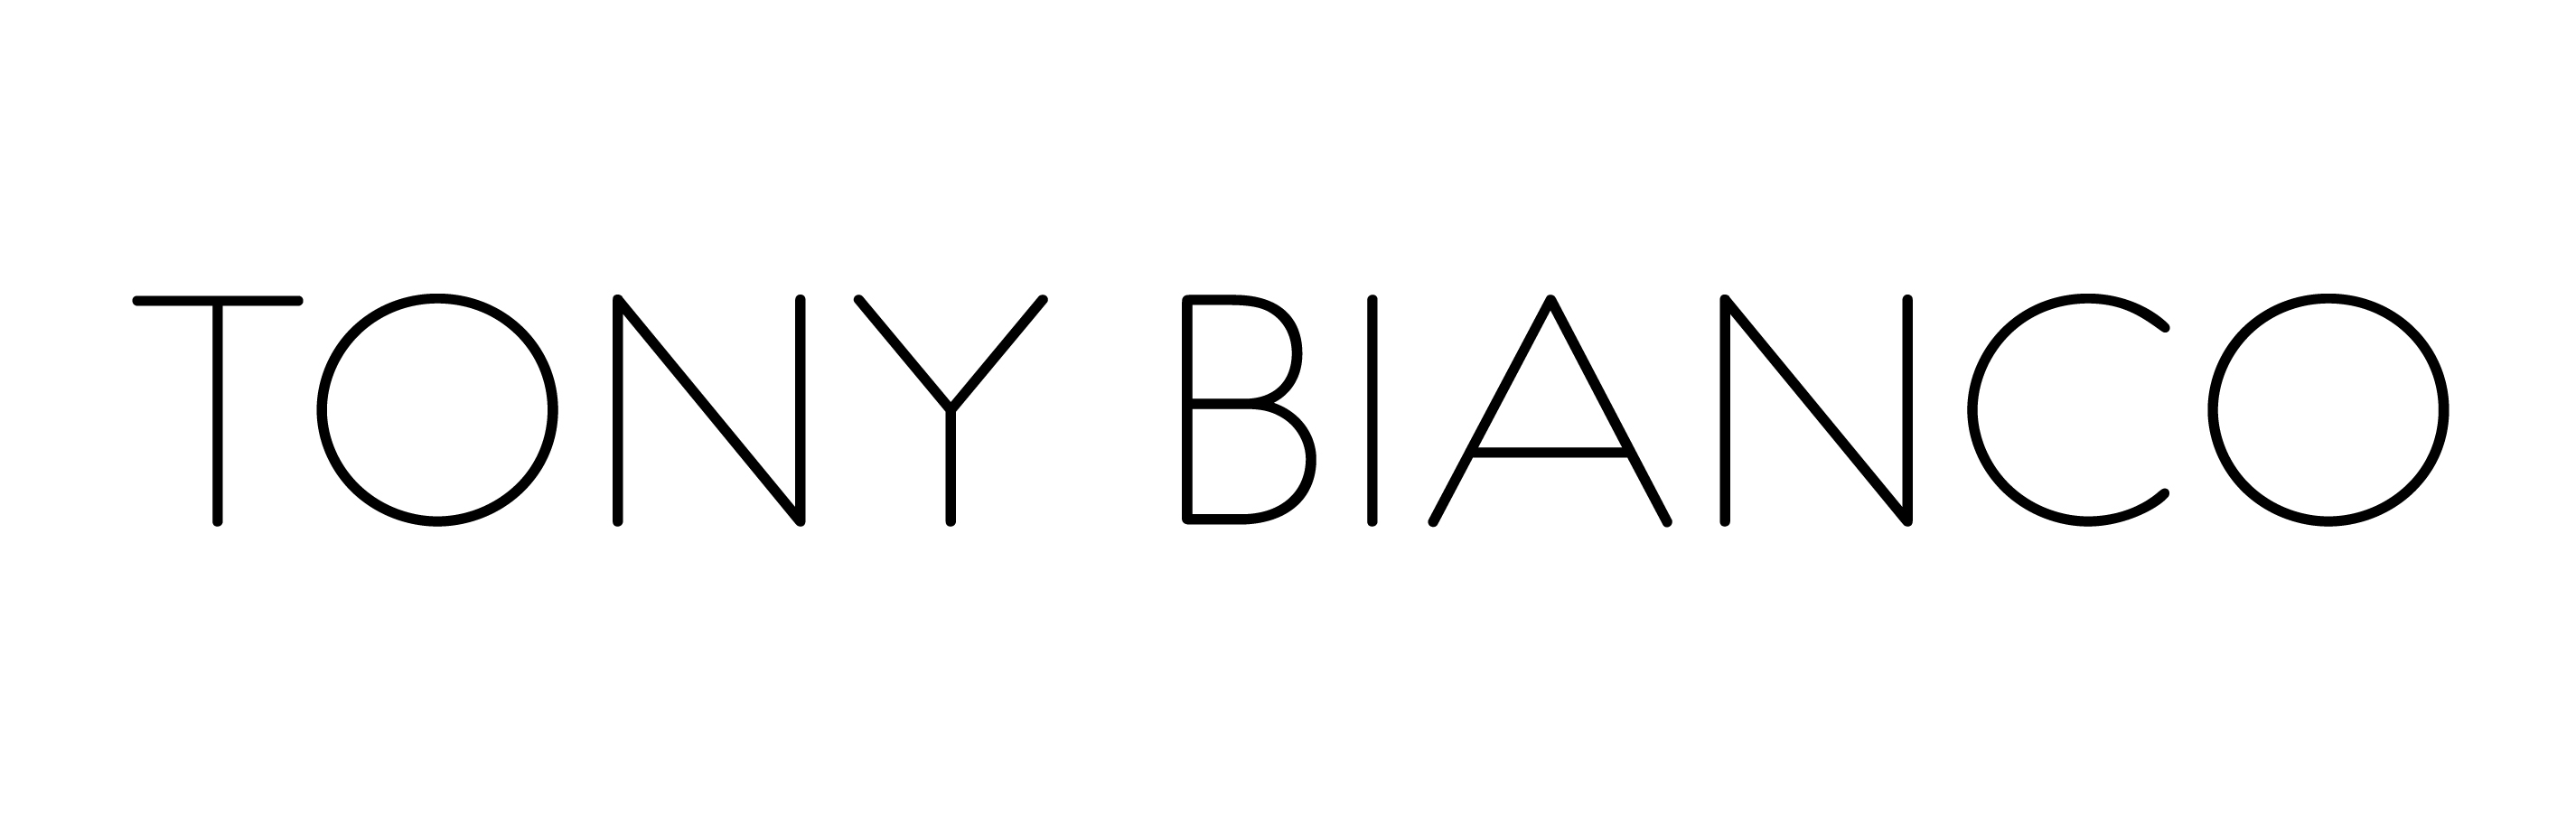 Tony Bianco_logo